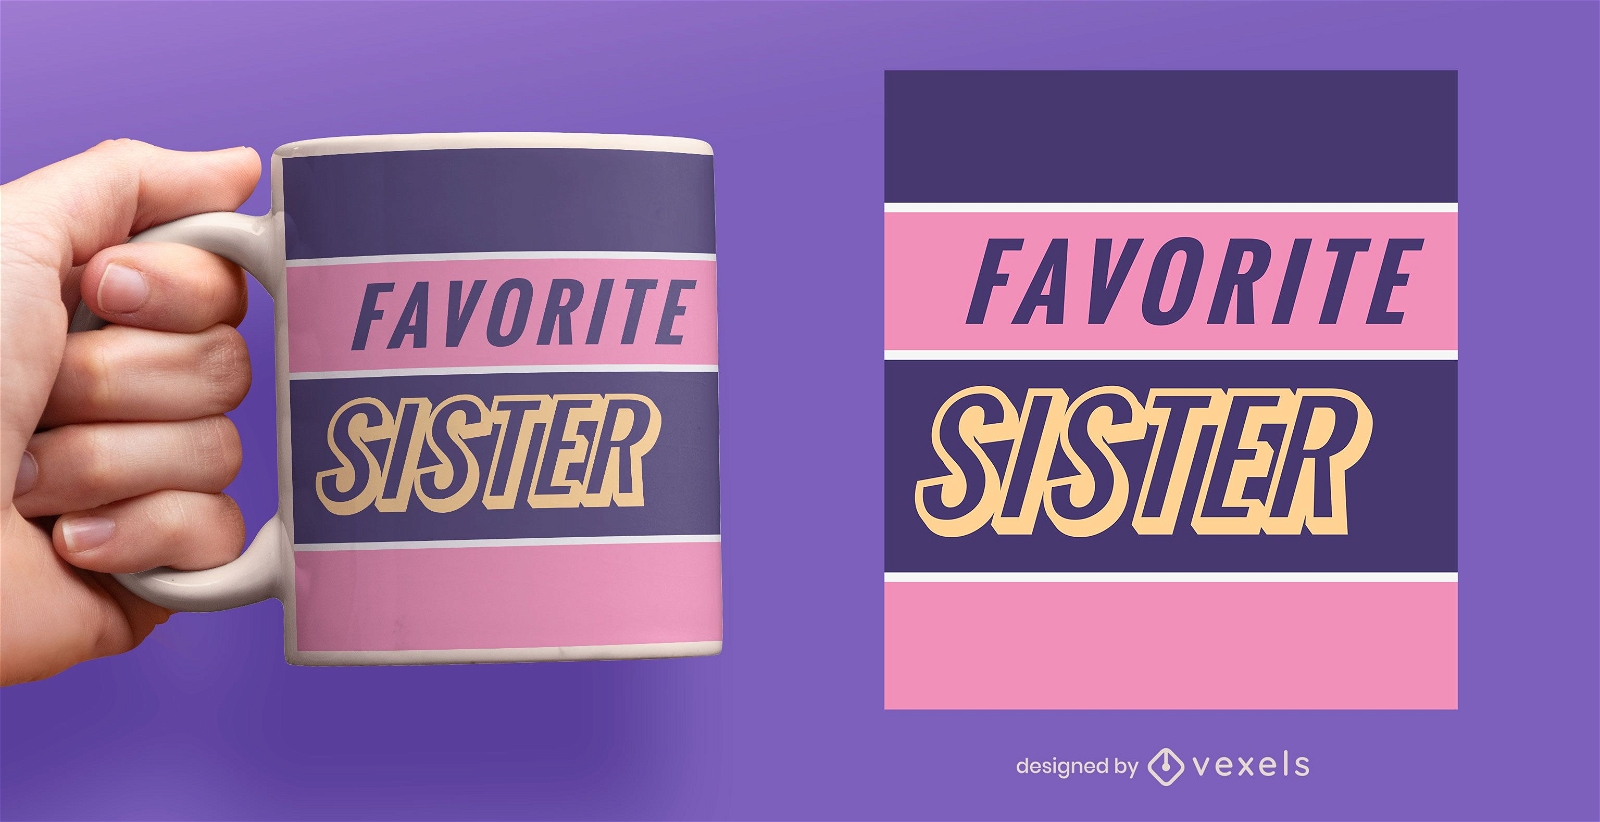 Favorite sister flat mug design